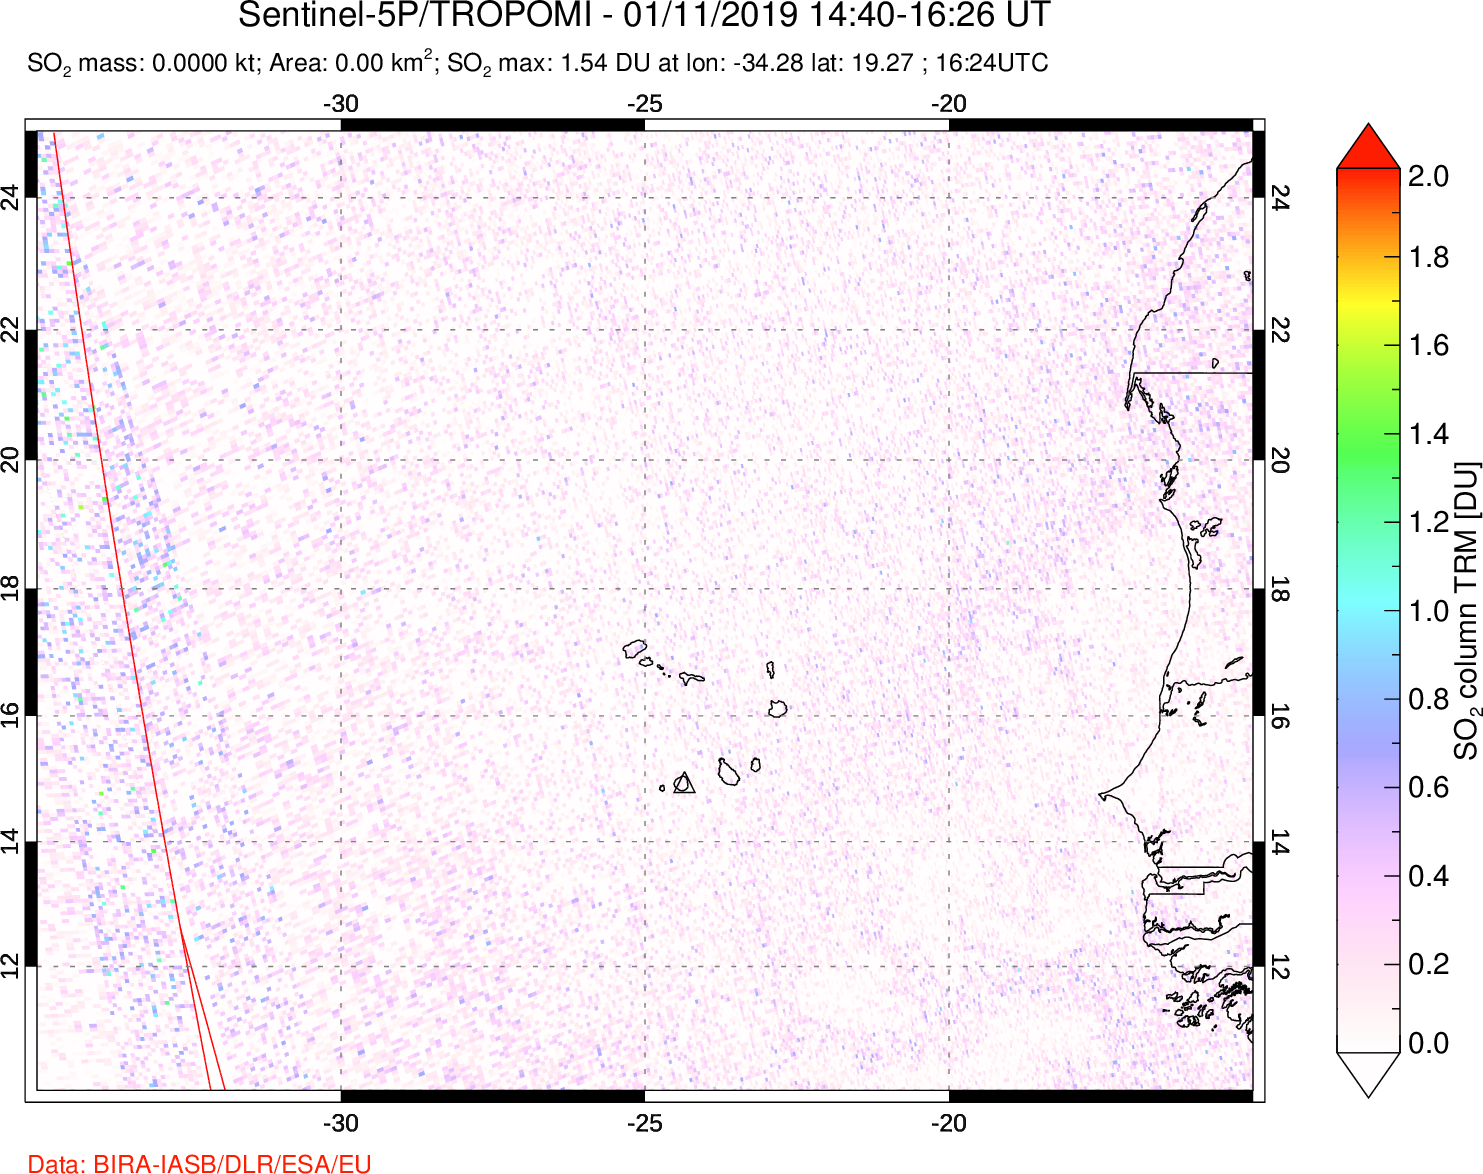 A sulfur dioxide image over Cape Verde Islands on Jan 11, 2019.